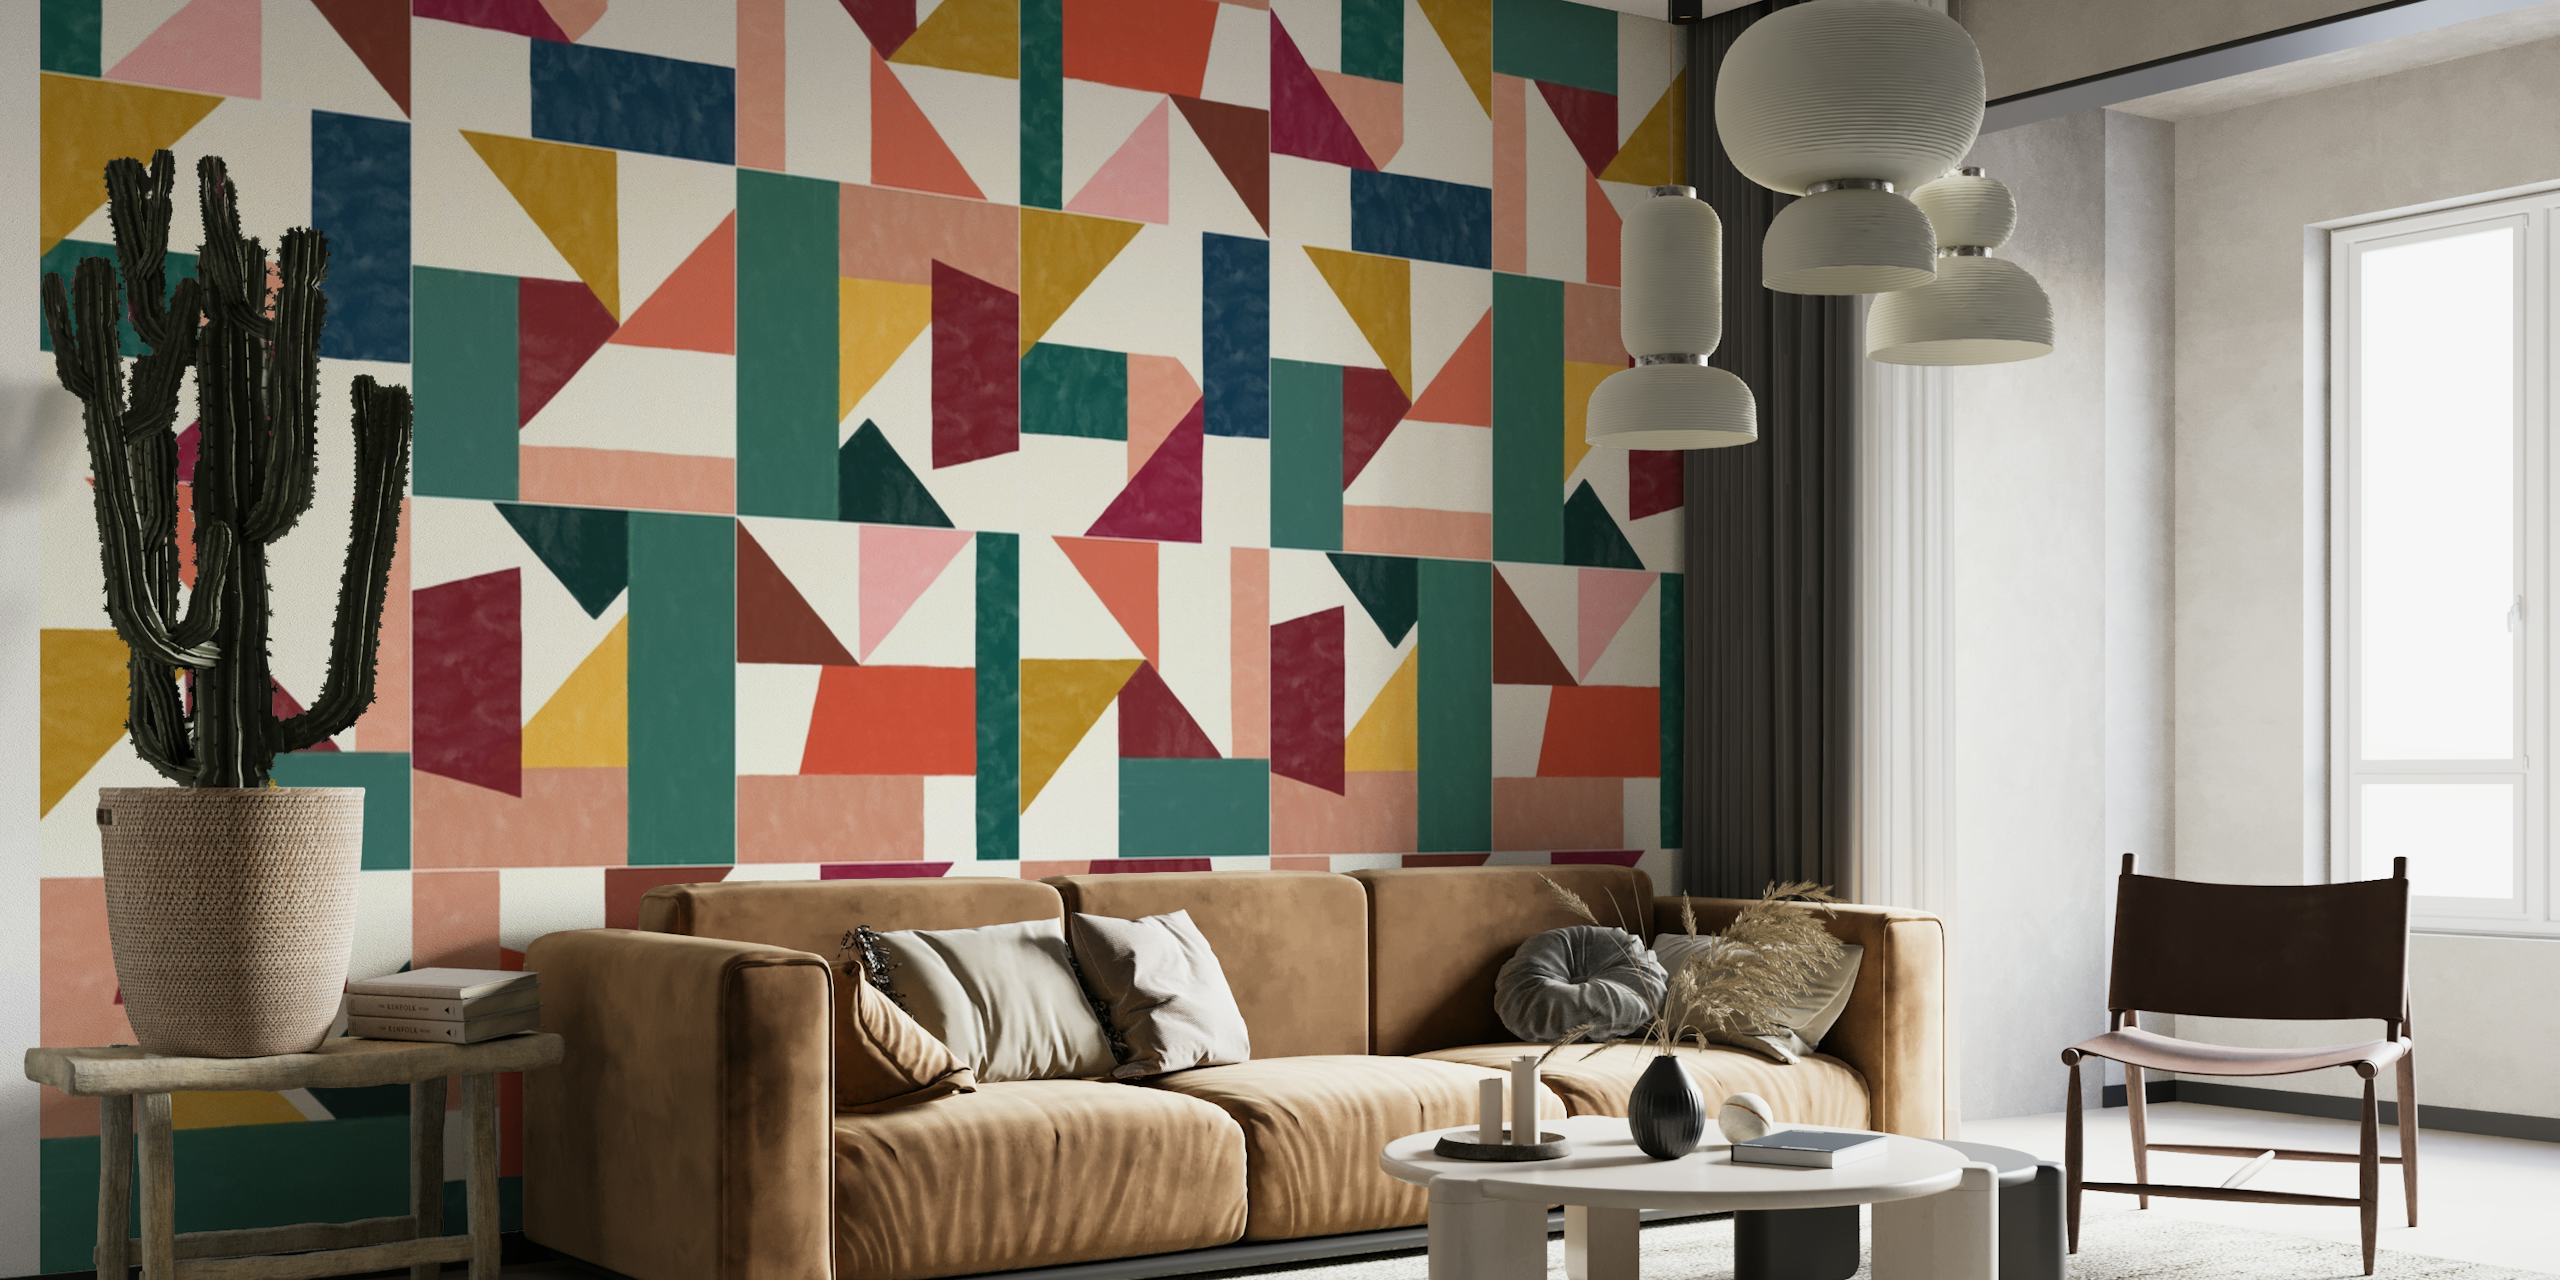 Tangram Wall Tiles One tapete